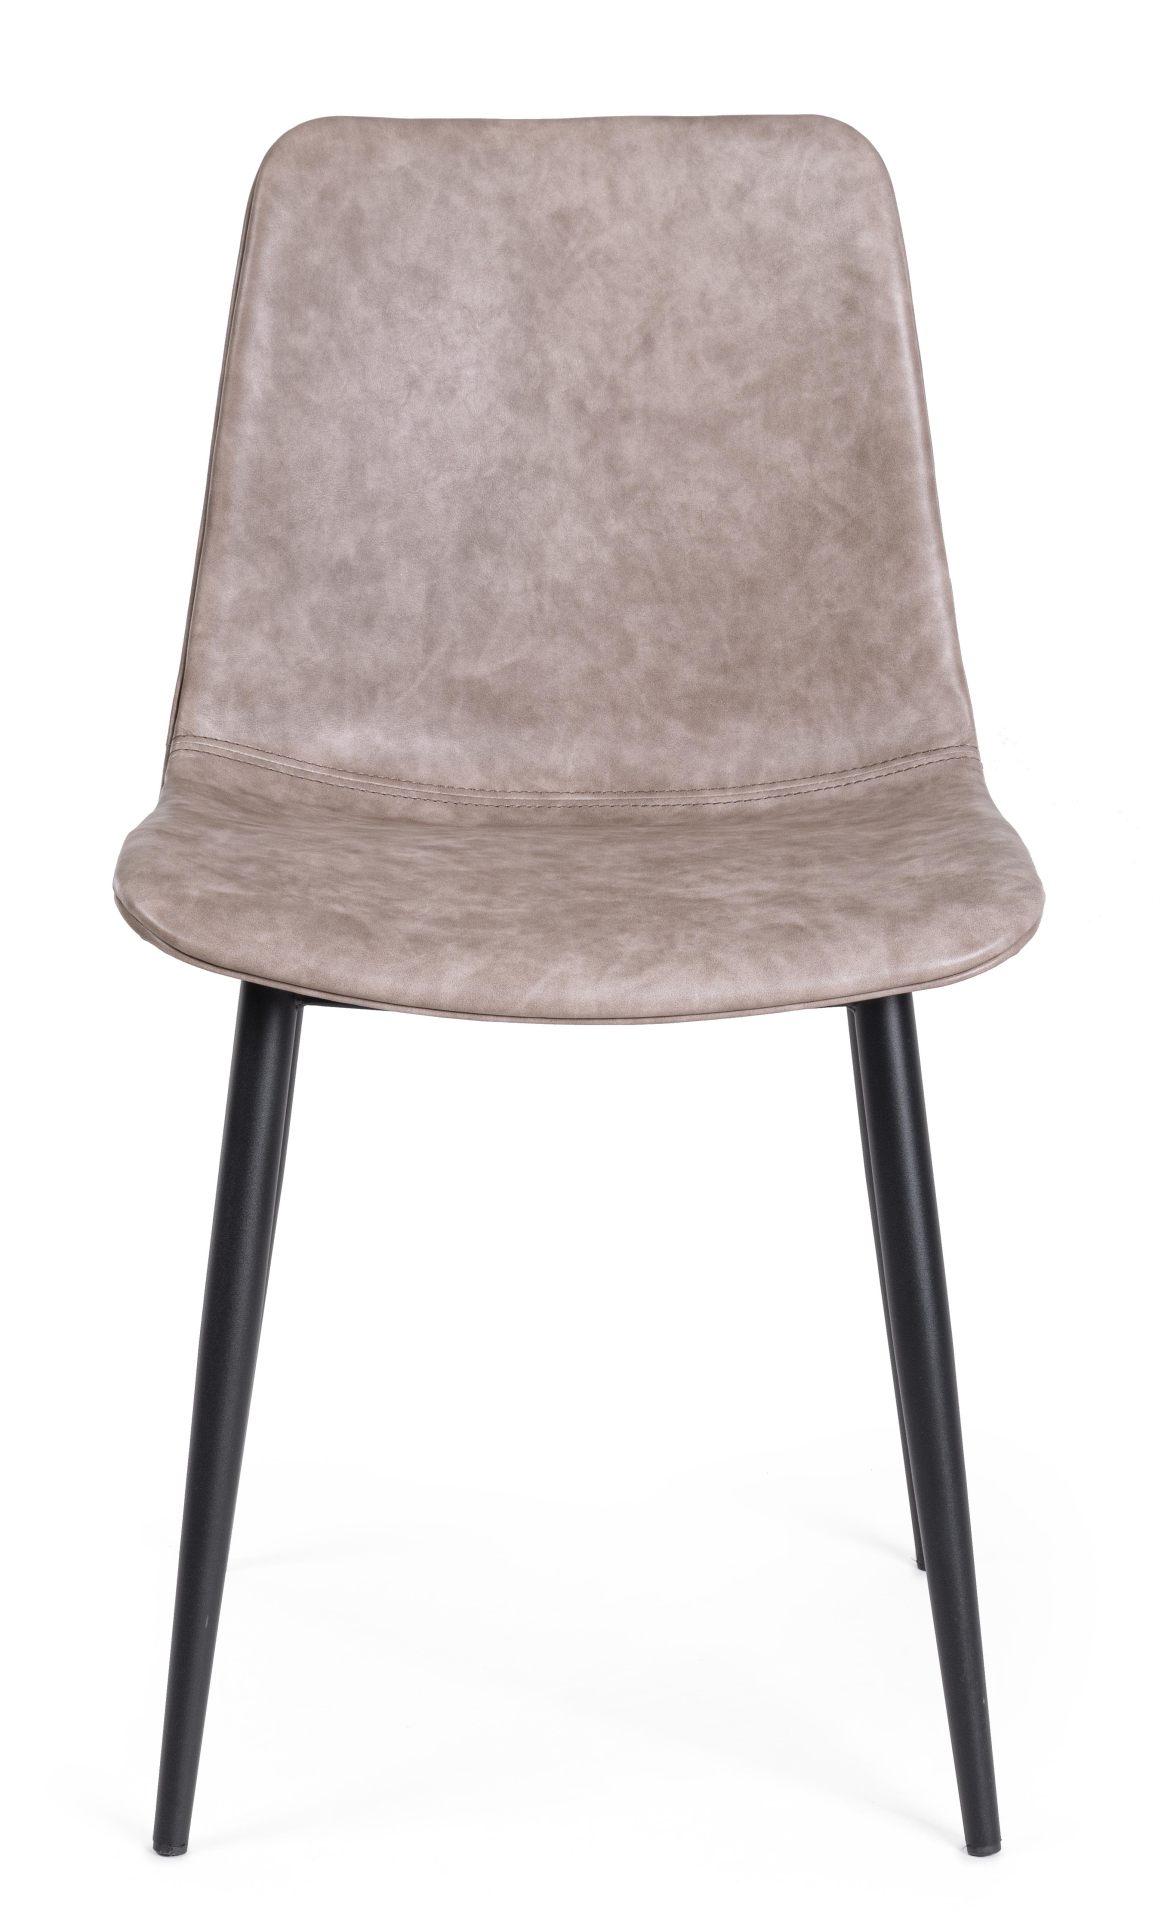 Der Esszimmerstuhl Kyra überzeugt mit seinem modernen Design. Gefertigt wurde der Stuhl aus Kunstleder, welcher einen Beige Farbton besitzt. Das Gestell ist aus Metall und ist Schwarz. Die Sitzhöhe beträgt 44 cm.